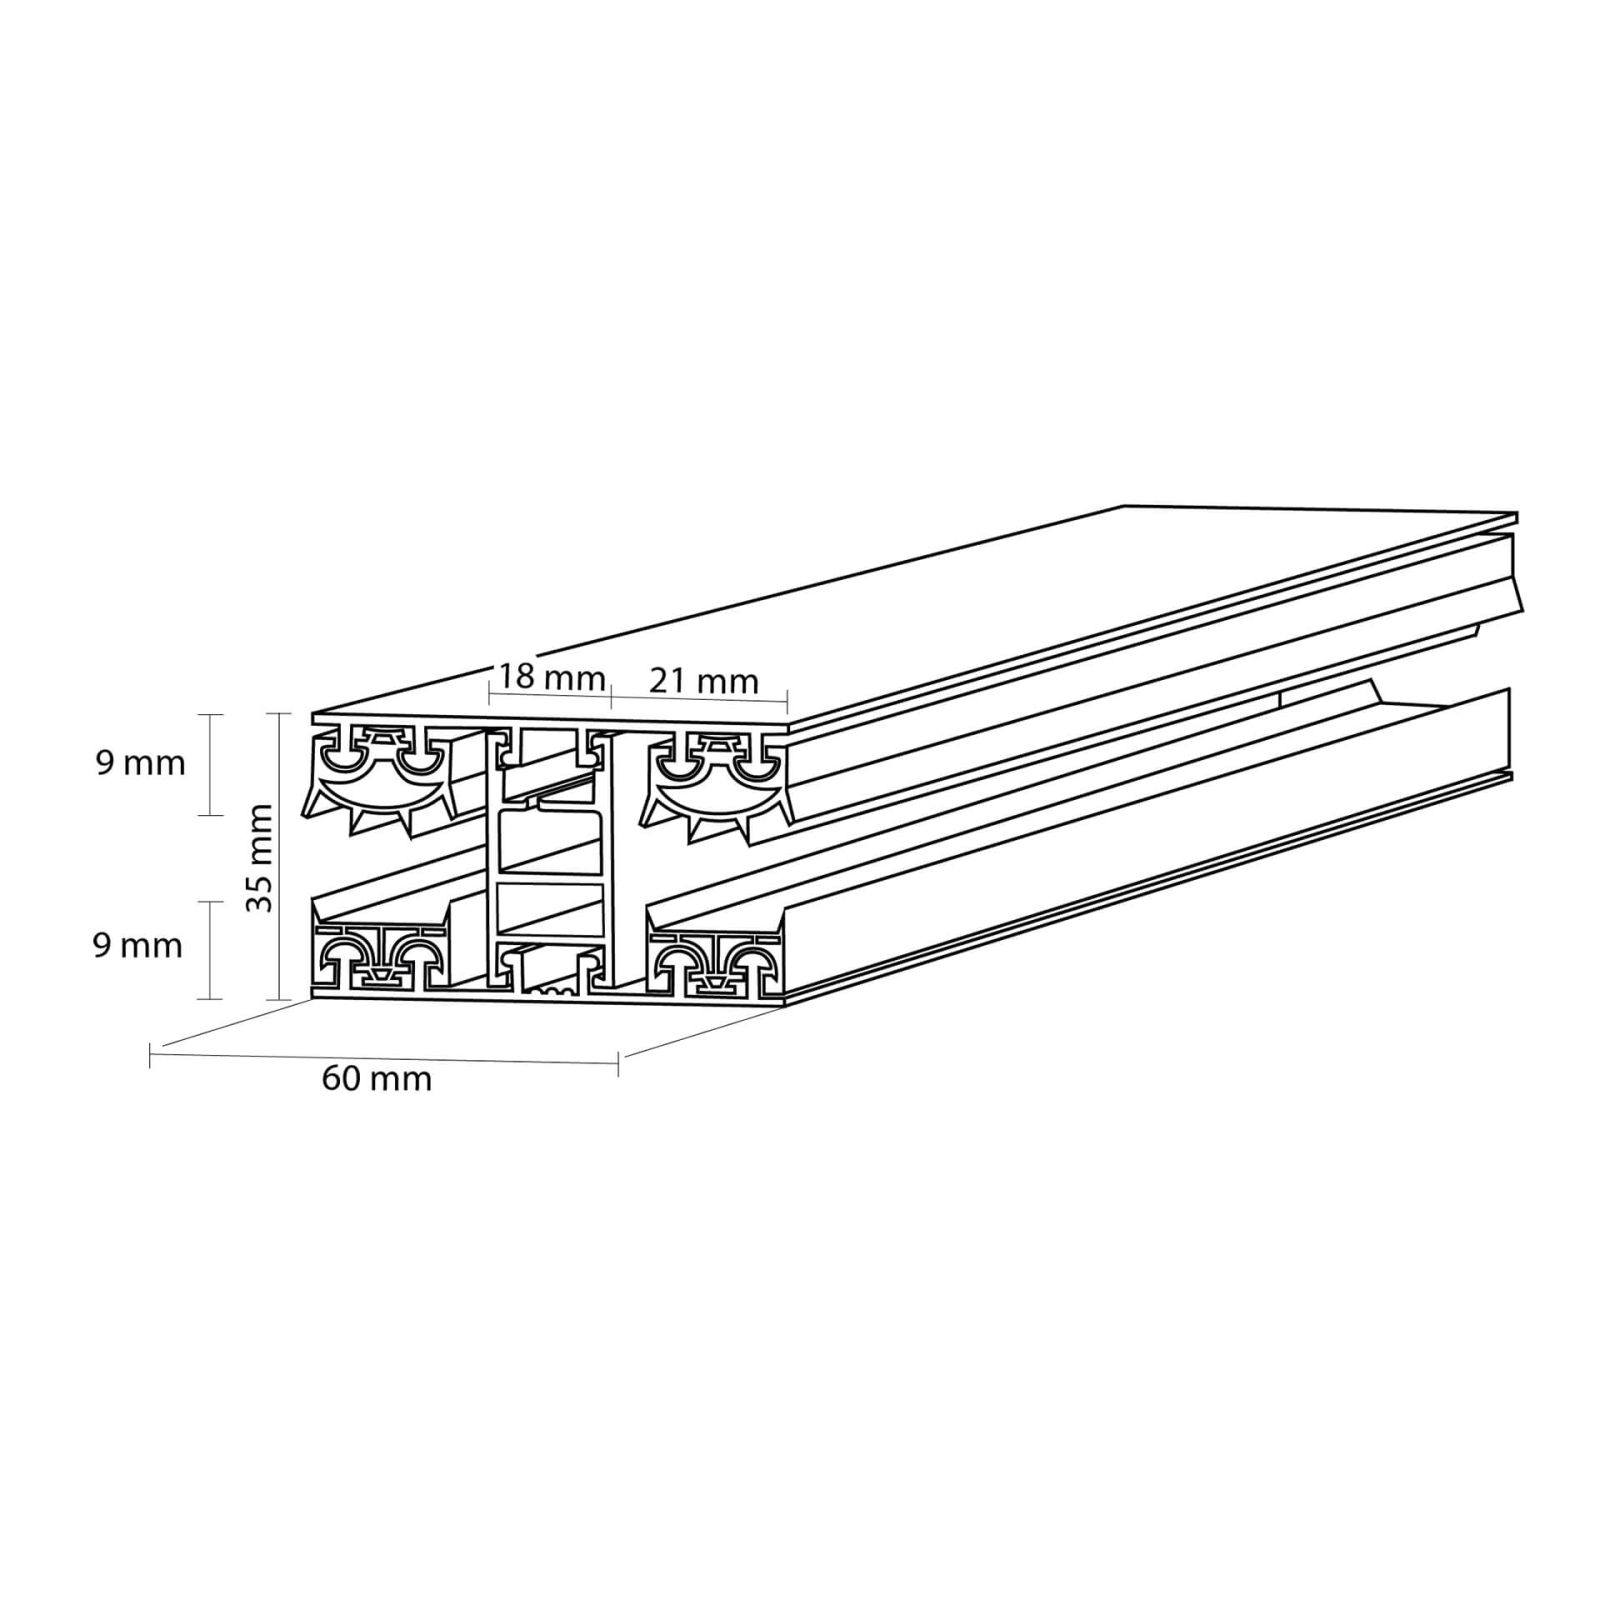 Polycarbonat Stegplatte | 16 mm | Profil Mendiger | Sparpaket | Plattenbreite 980 mm | Opal Weiß | Breite 3,09 m | Länge 2,00 m #8